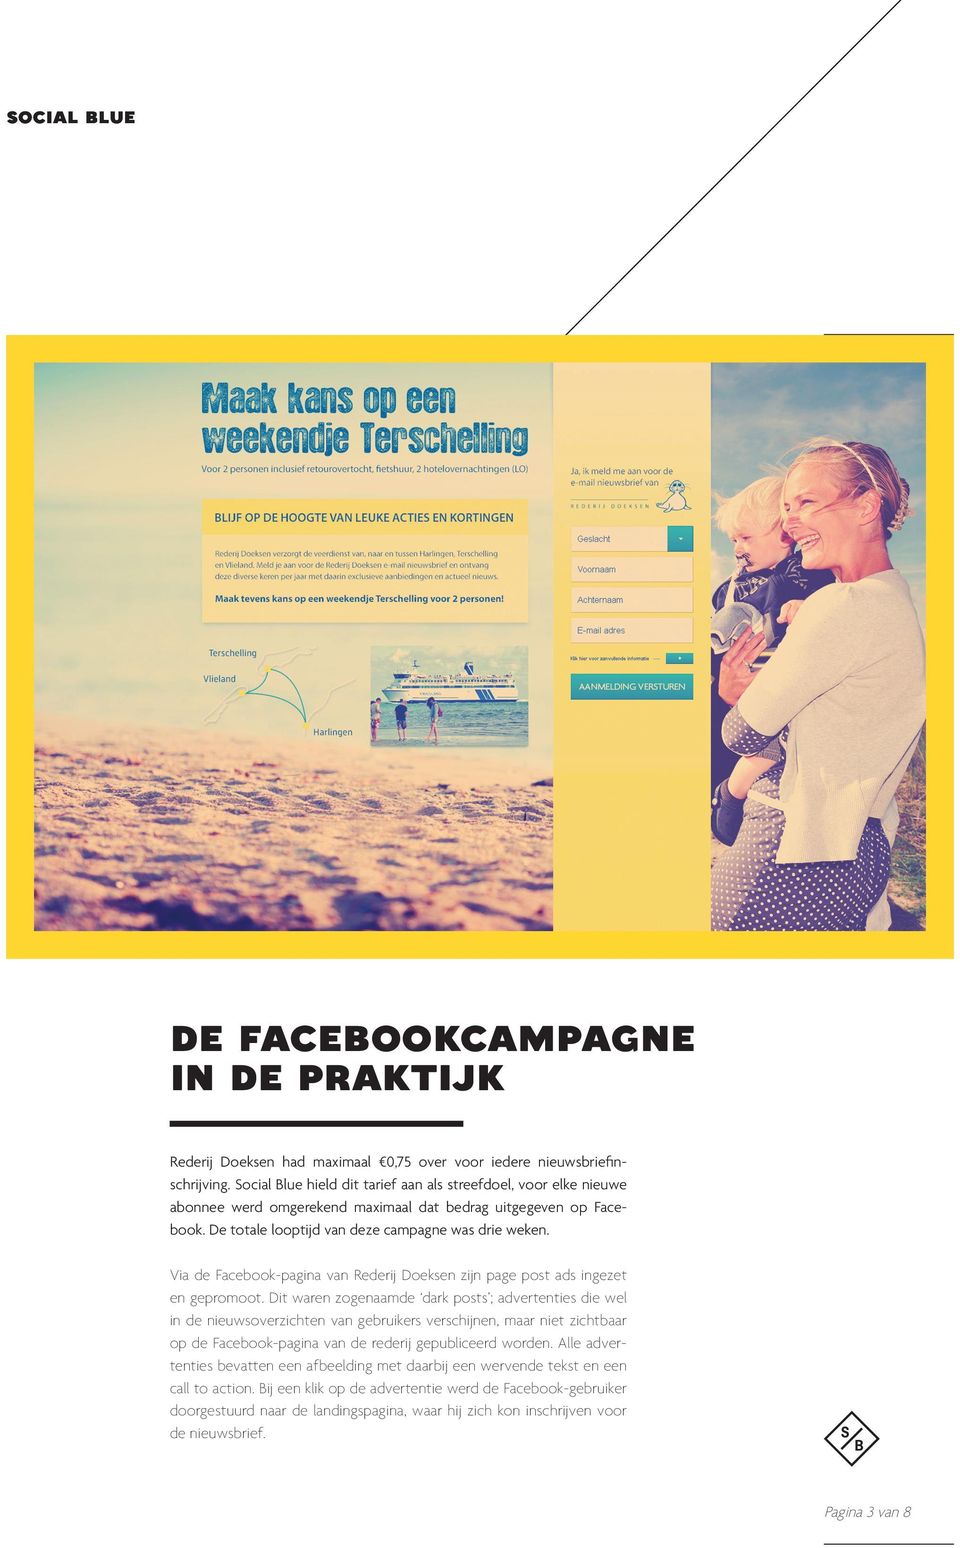 Via de Facebook-pagina van Rederij Doeksen zijn page post ads ingezet en gepromoot.